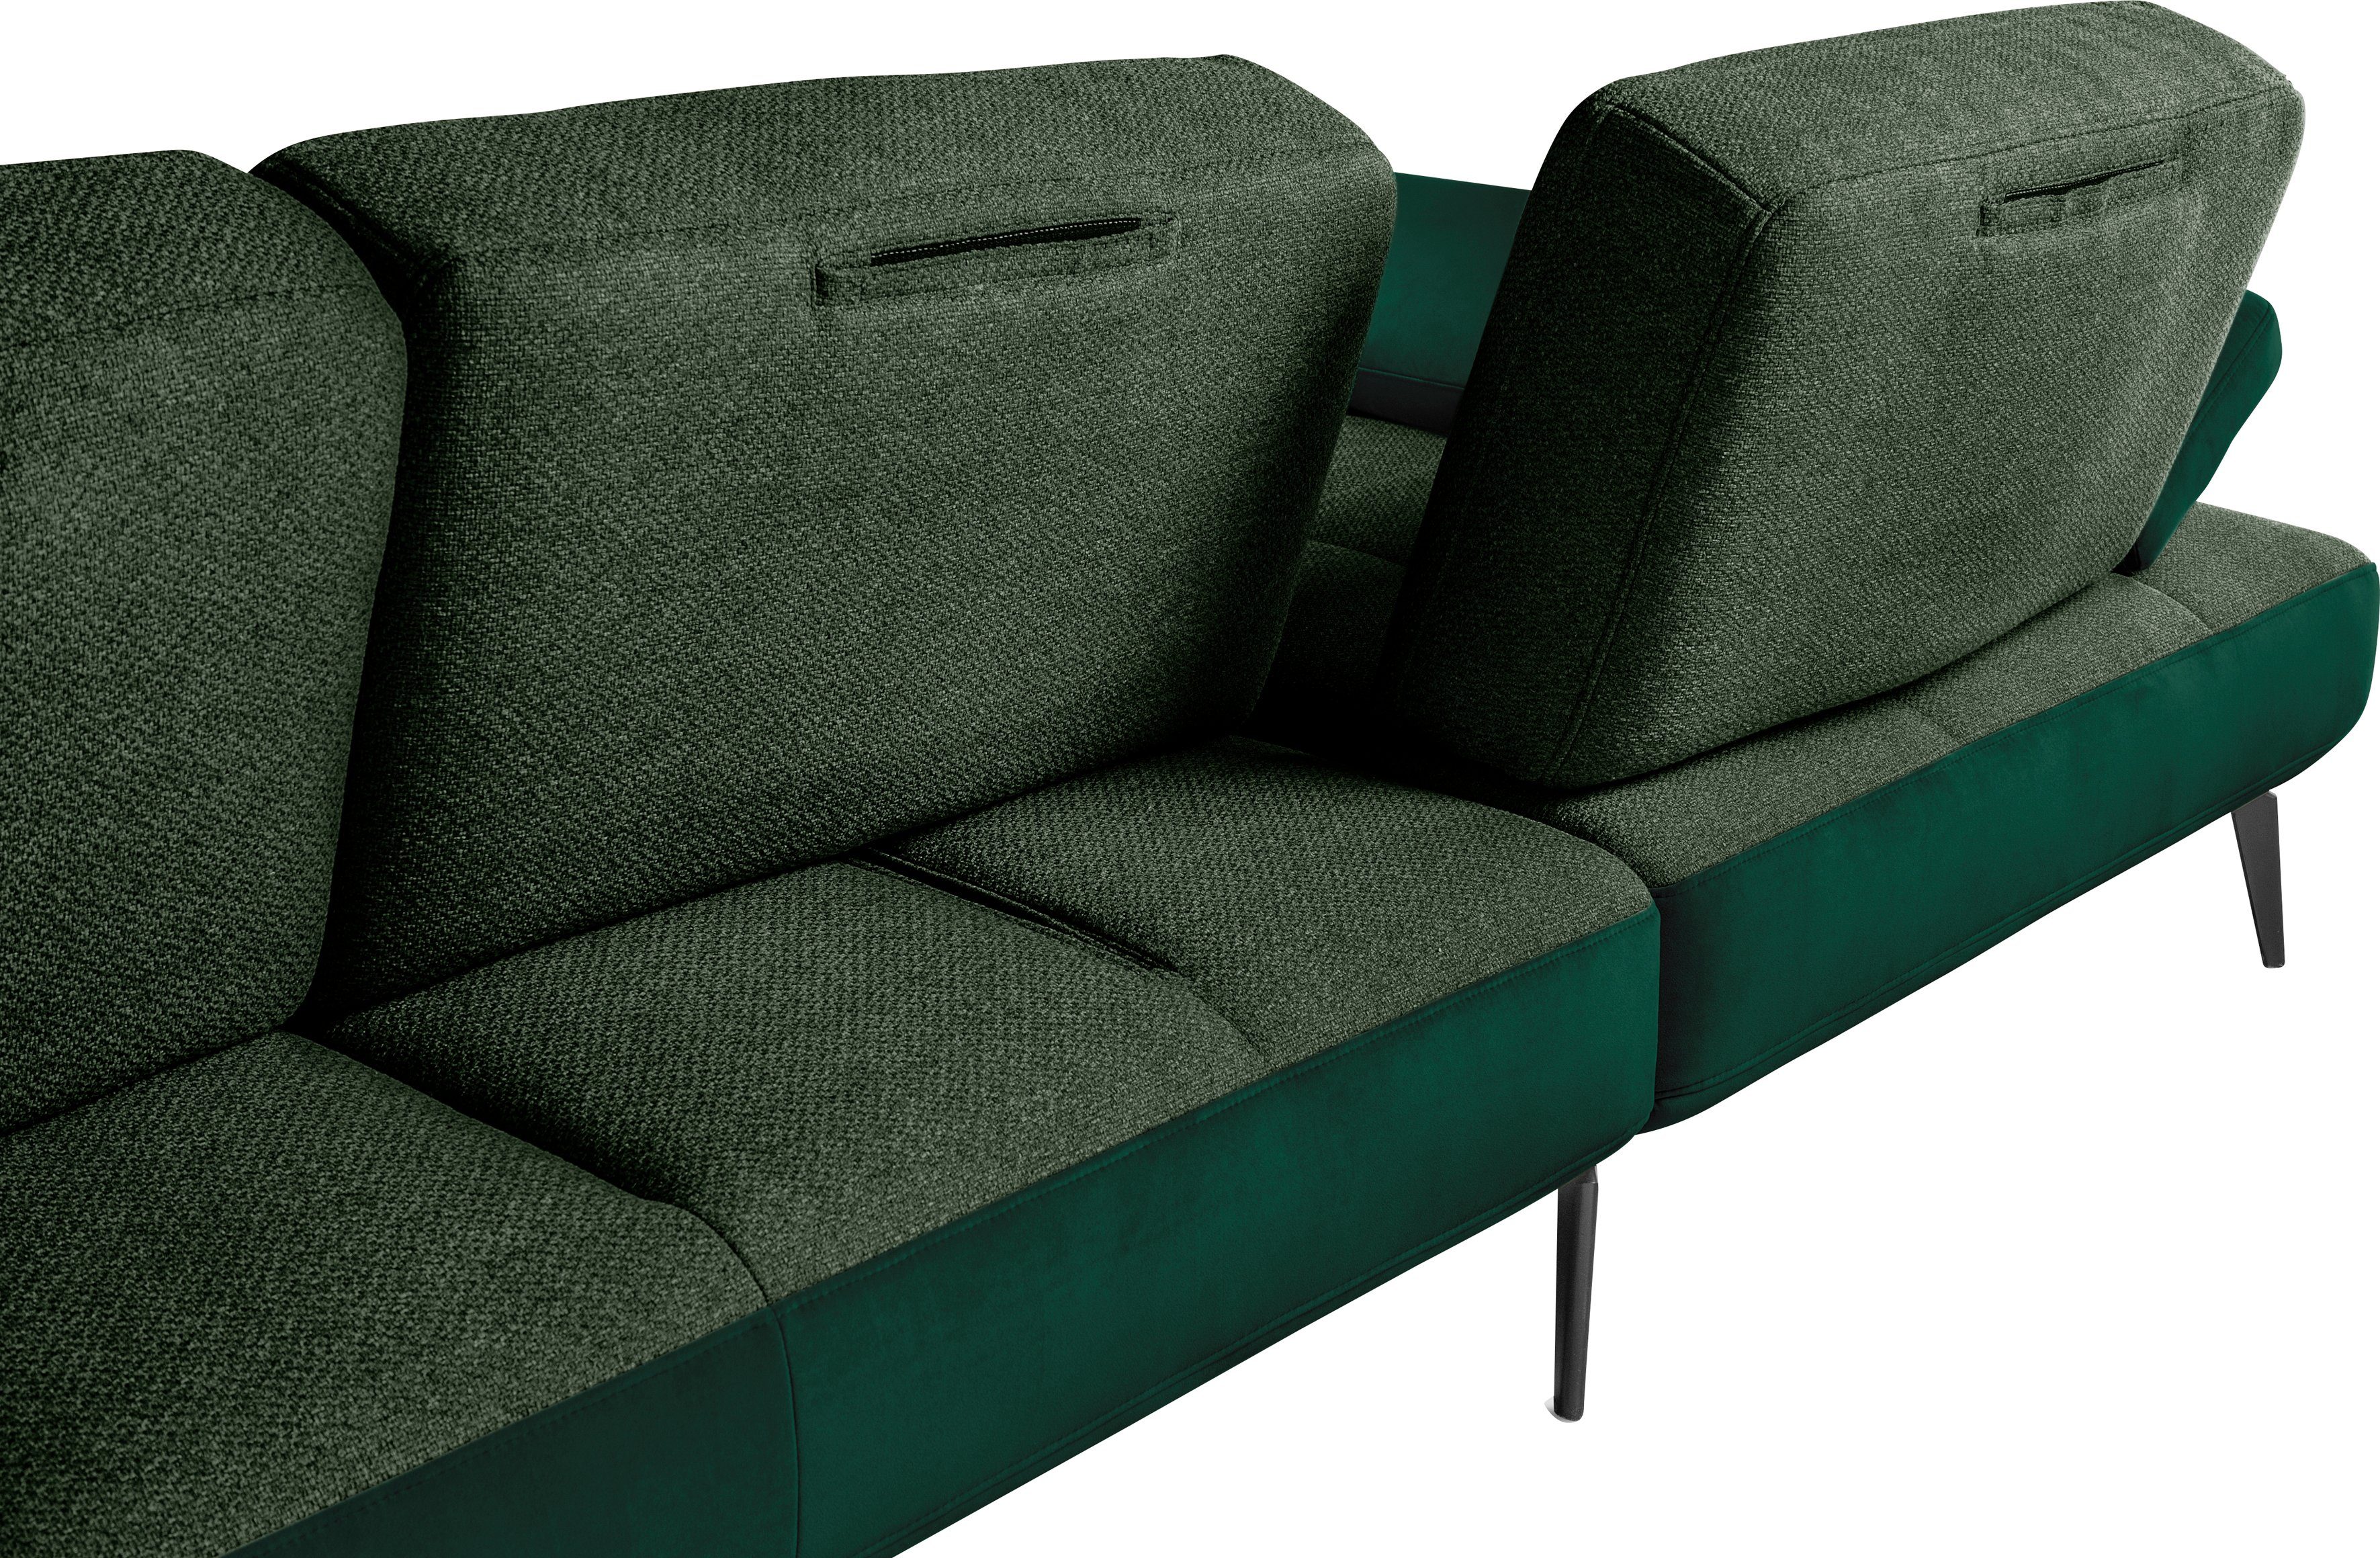 Sitztiefenverstellung by 4300, set SO dunkelgrün162/dunkelgrün38 one inklusive Ecksofa und Nierenkissen Musterring